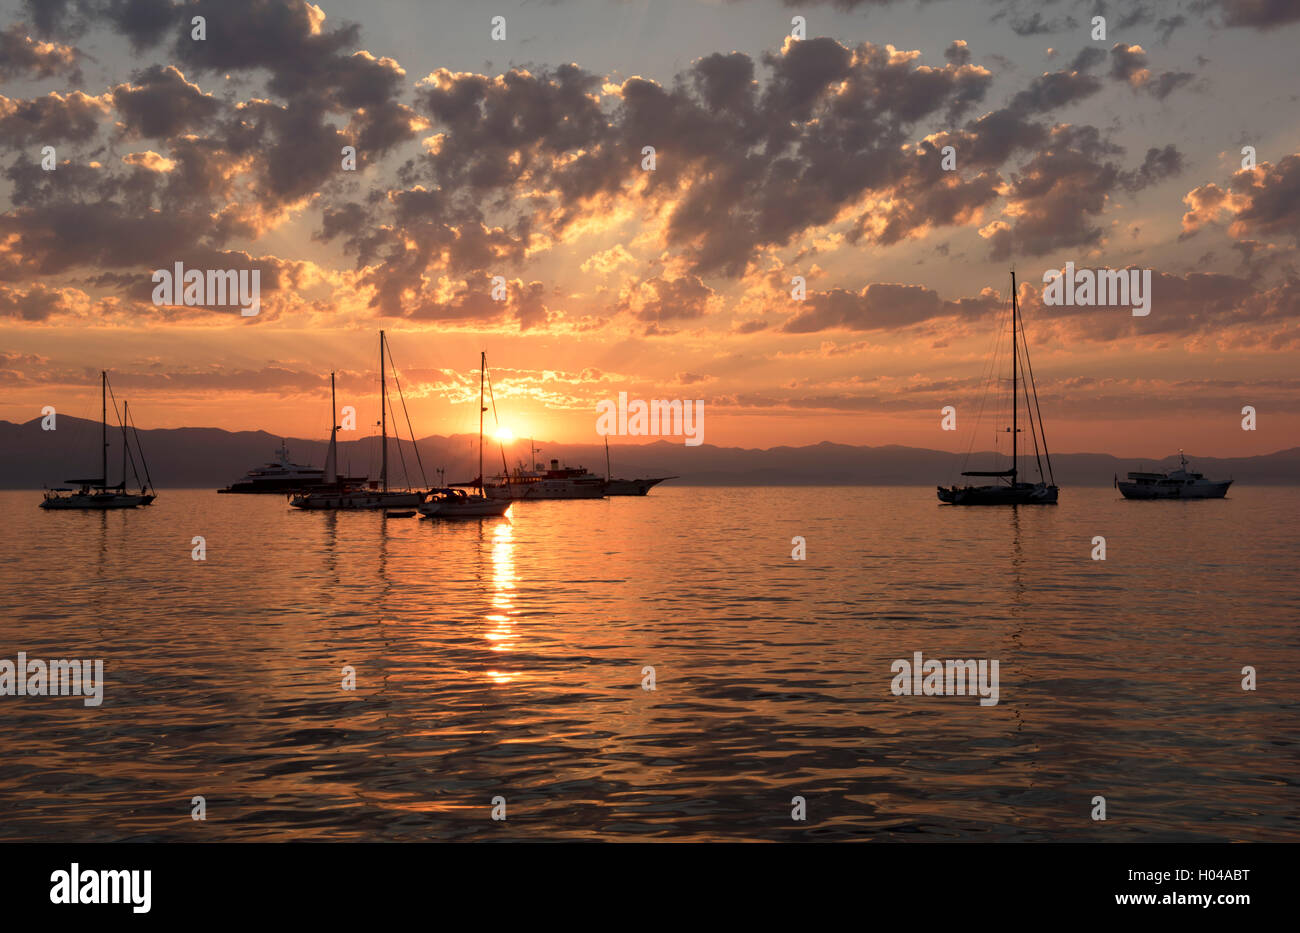 Lever du soleil derrière la voile des bateaux et yachts amarrés dans le port de Gaios, Paxos, îles Ioniennes, îles grecques, Grèce, Europe Banque D'Images